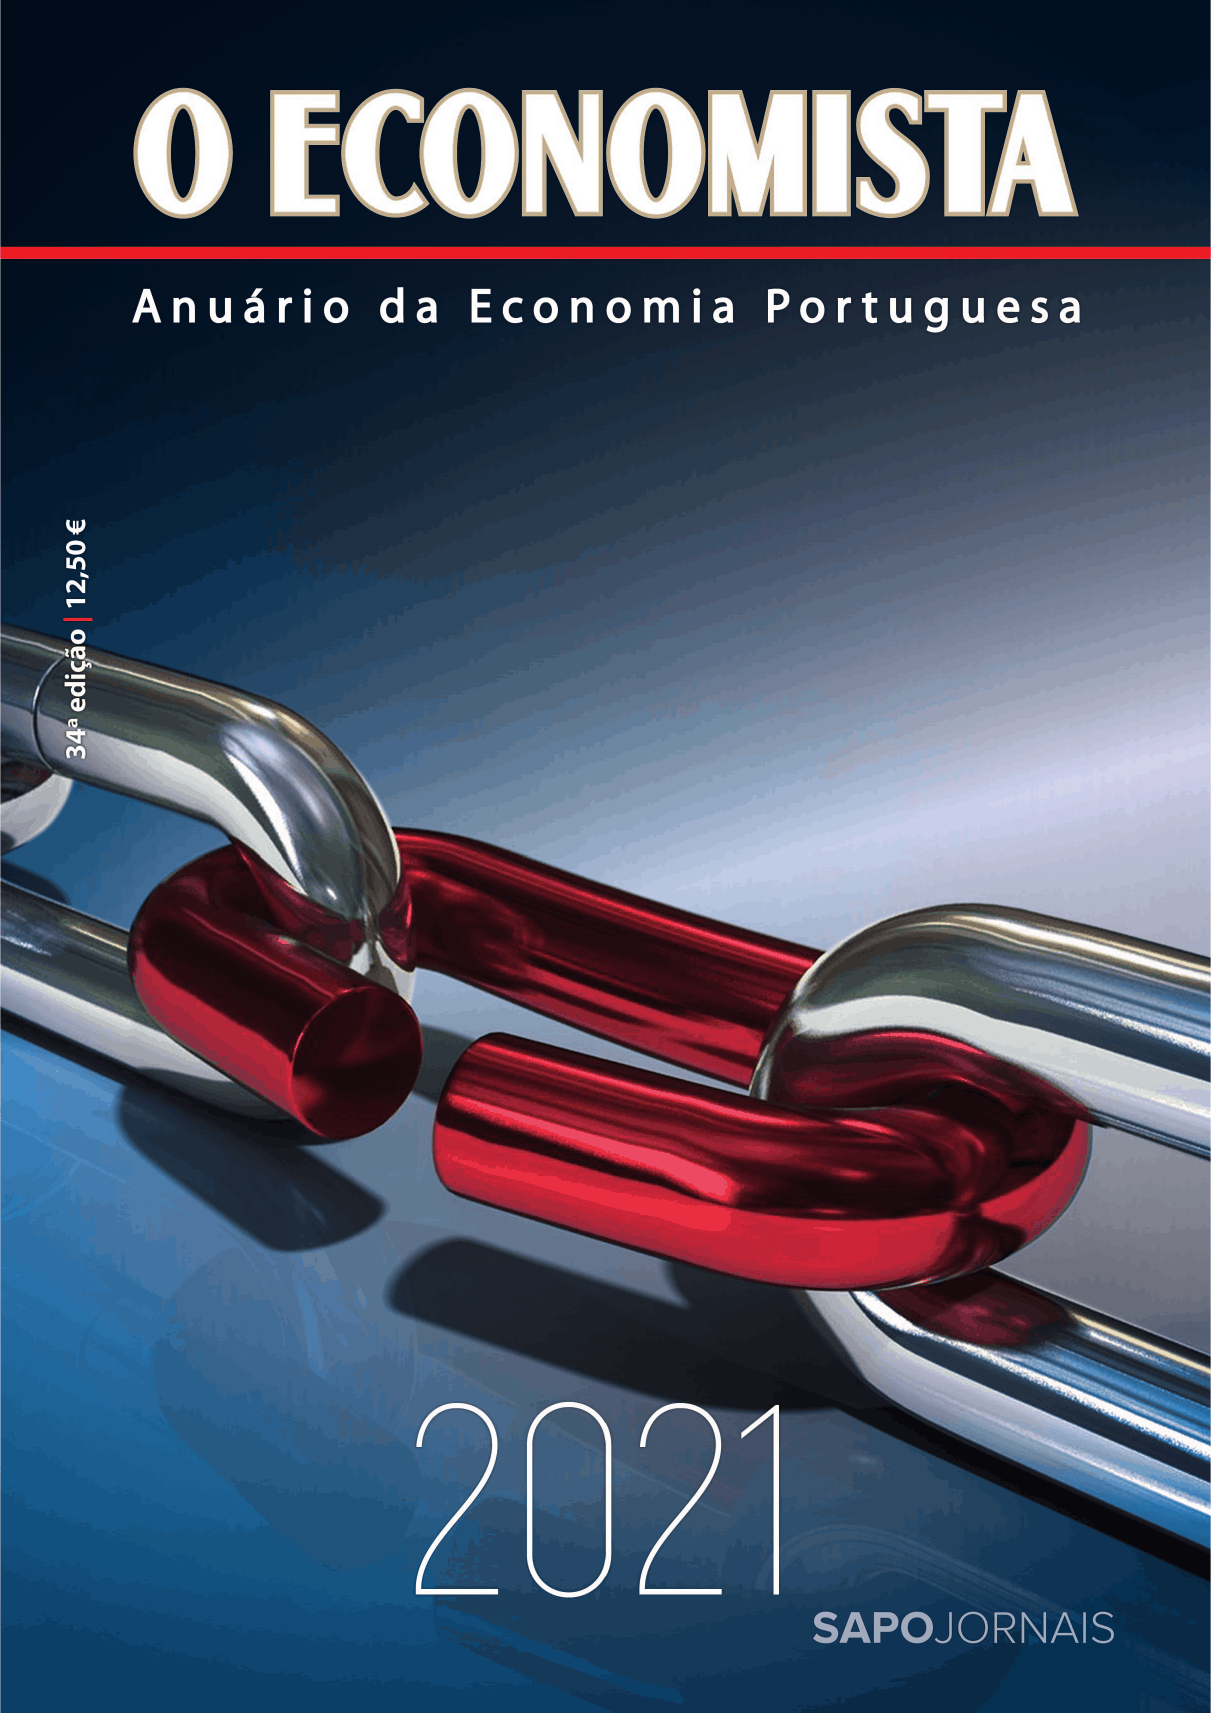 O Economista - Anuário da Economia Portuguesa